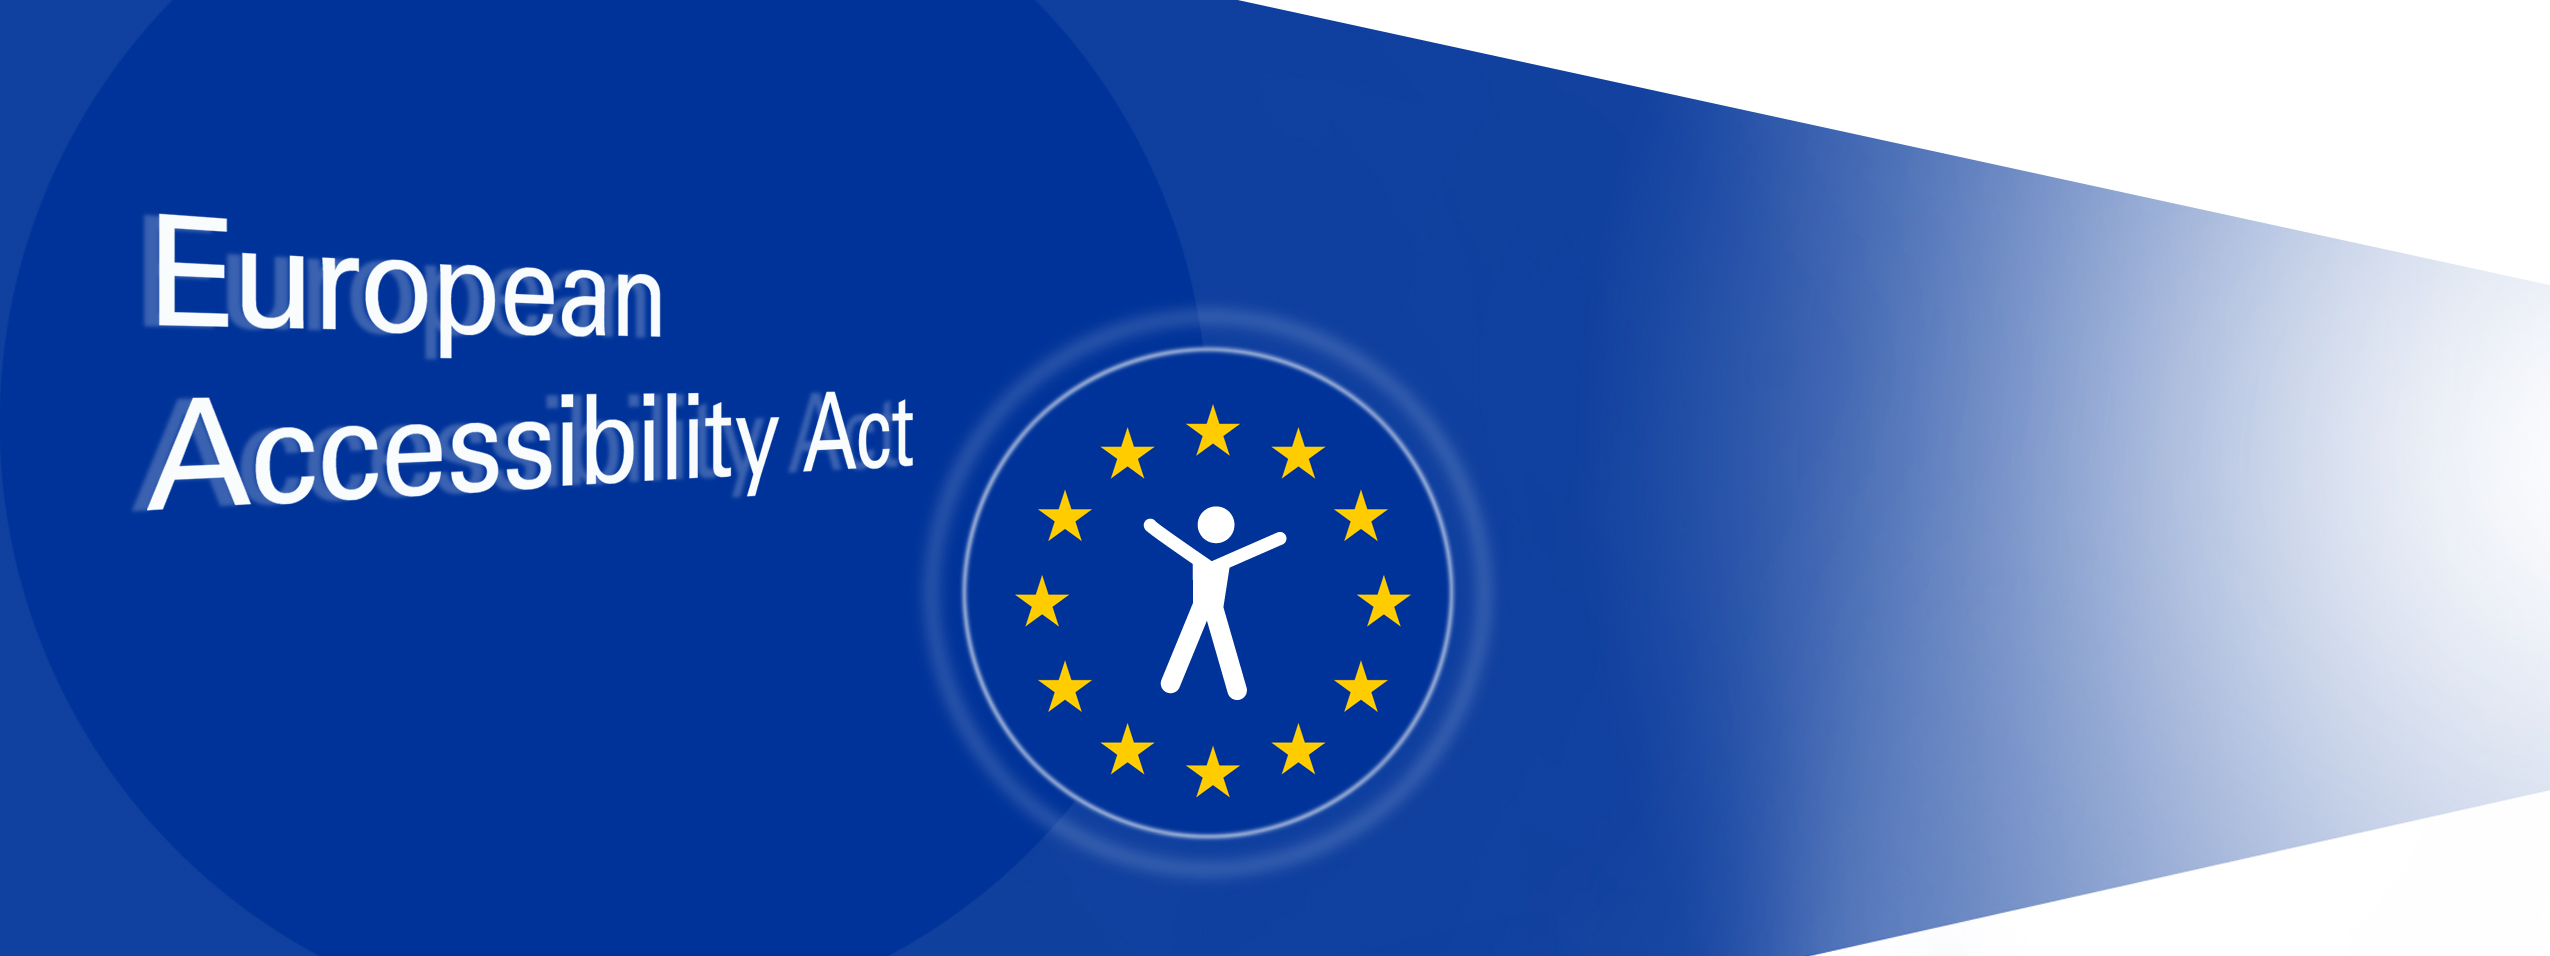 Auf einem blauen Hintergrund steht European Accessibility Act und daneben ist ein runder Kreis mit gelben Sternen in deren Mitte ein weißes Piktogramm mit ausgebreiteten Armen steht.